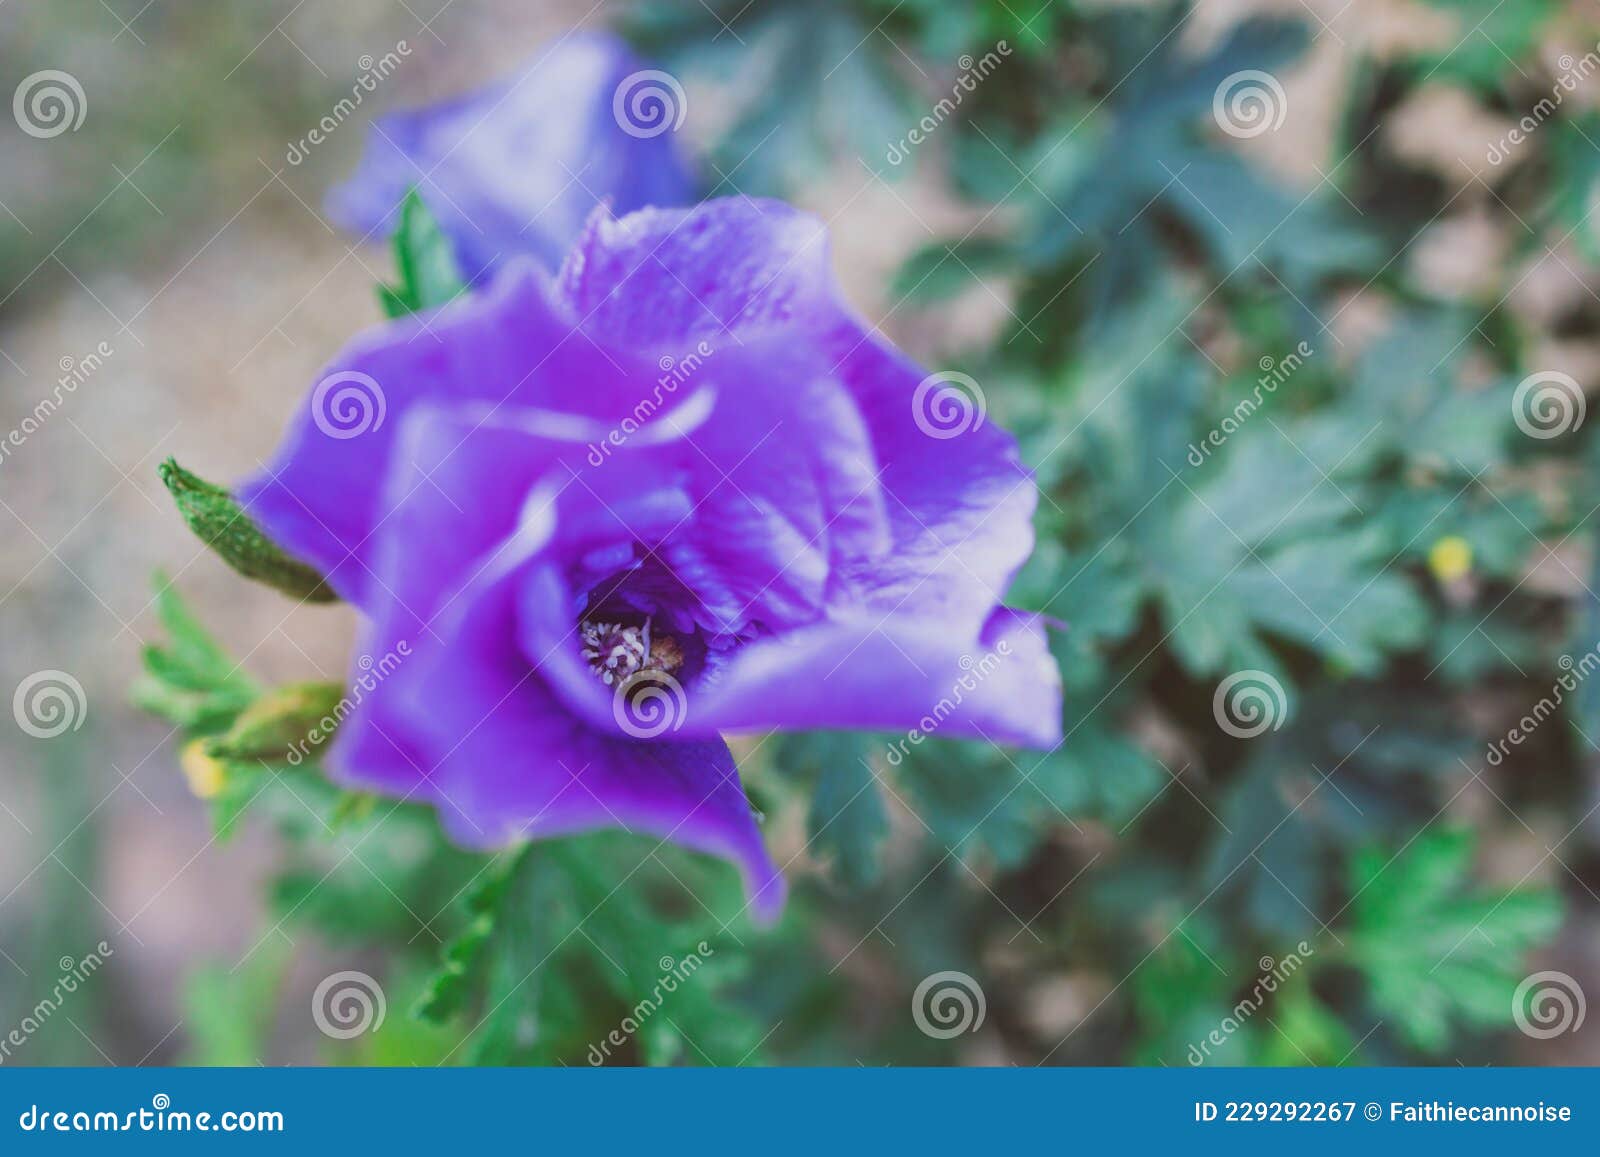 芙蓉紫花瓣宏观摄影 库存图片. 图片 包括有 墙纸, 关闭, 概念, 番红花, 花瓣, 颜色, 紫罗兰色 - 249327119